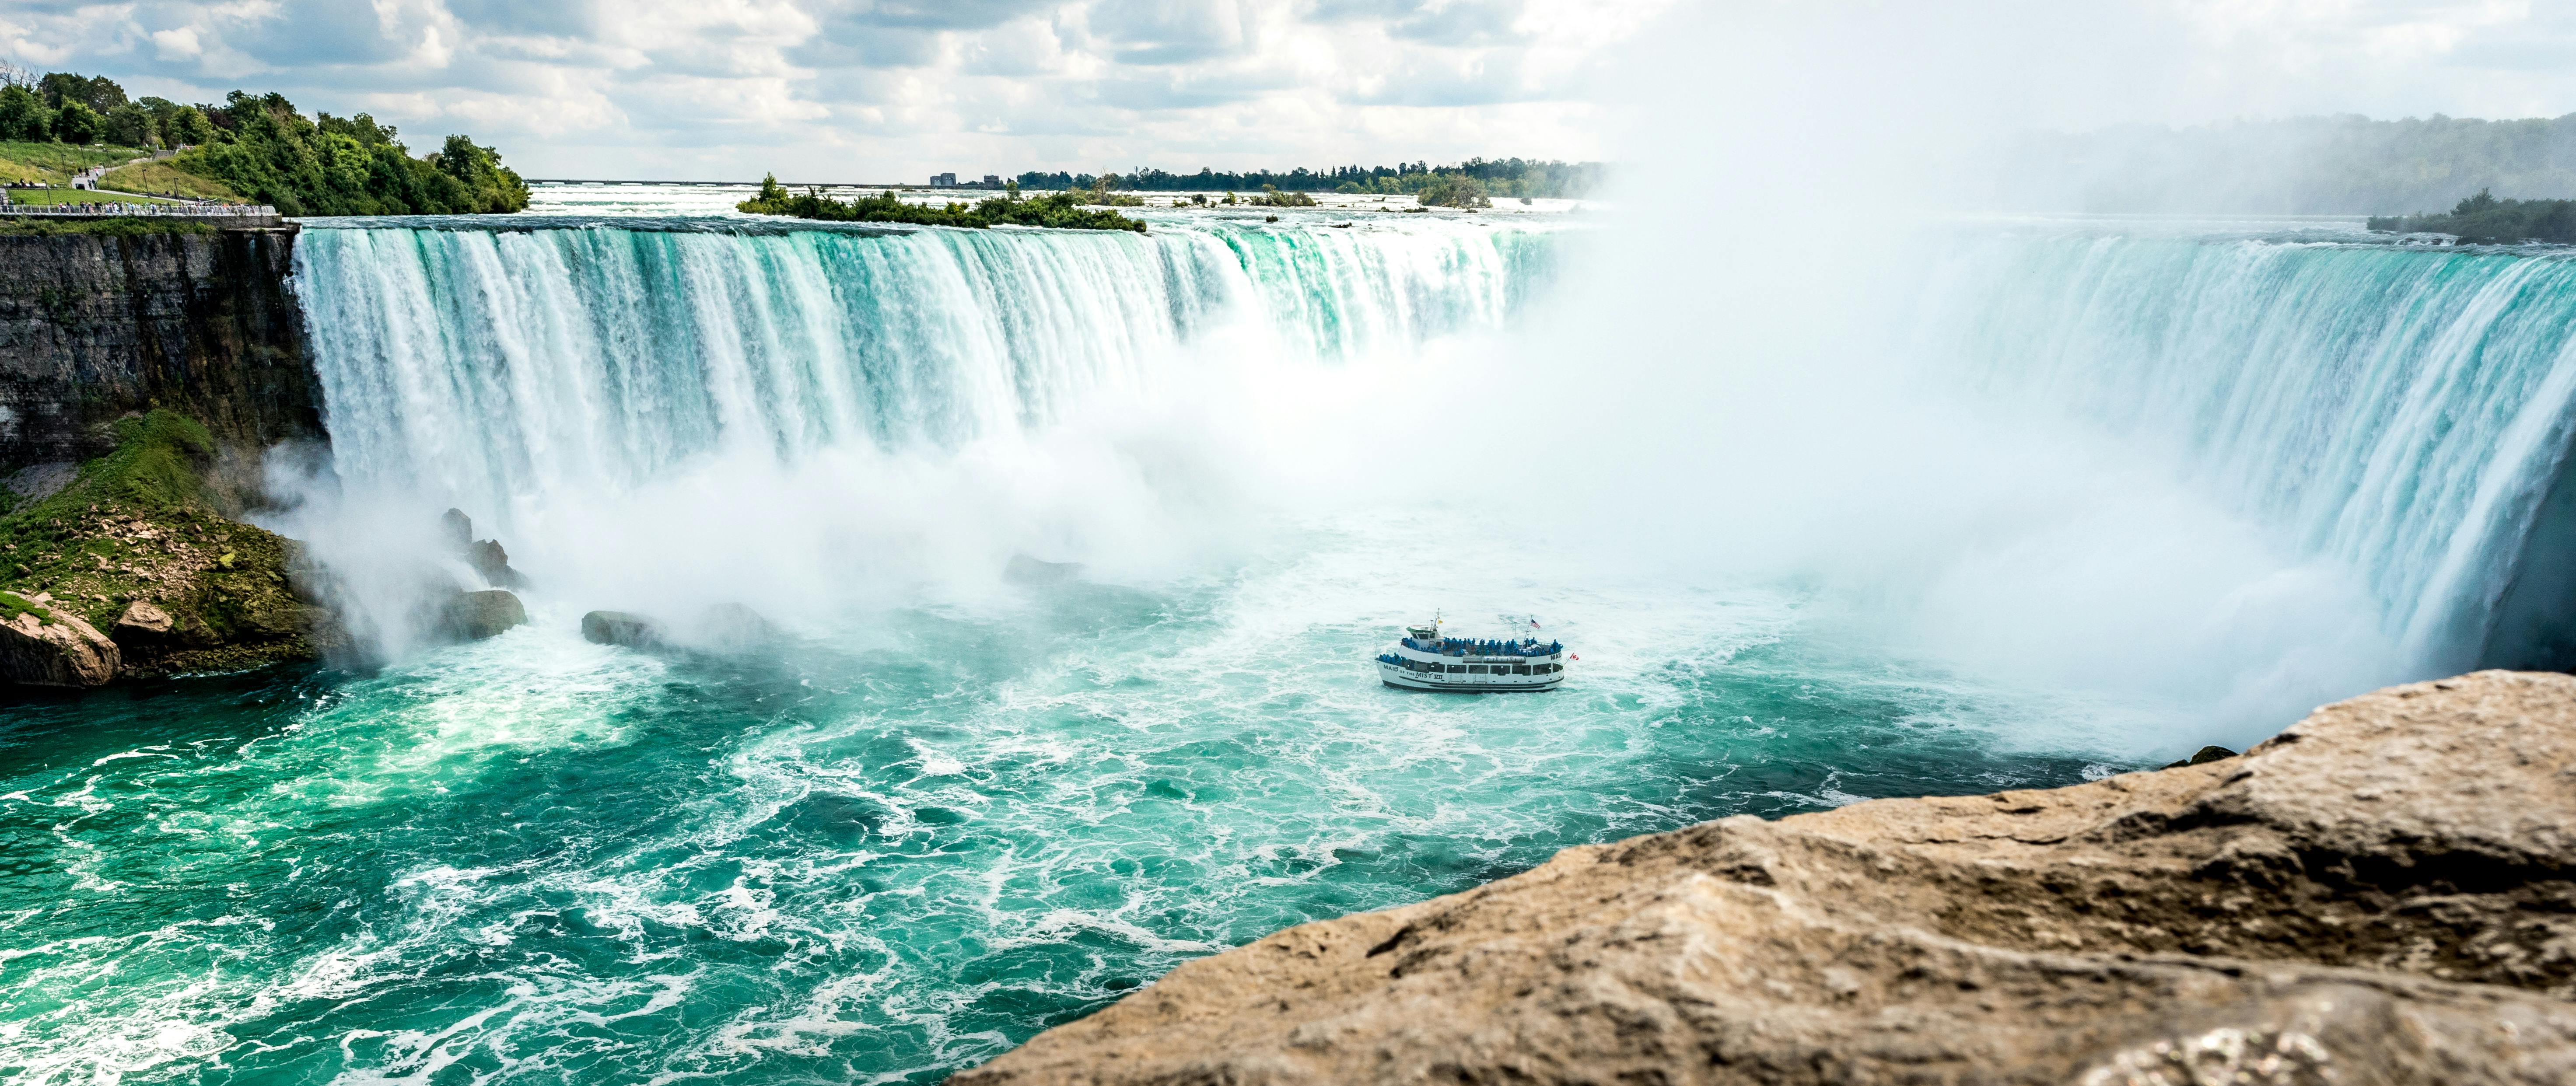 Niagara Falls Photos, Download Free Niagara Falls Stock Photos & HD Images